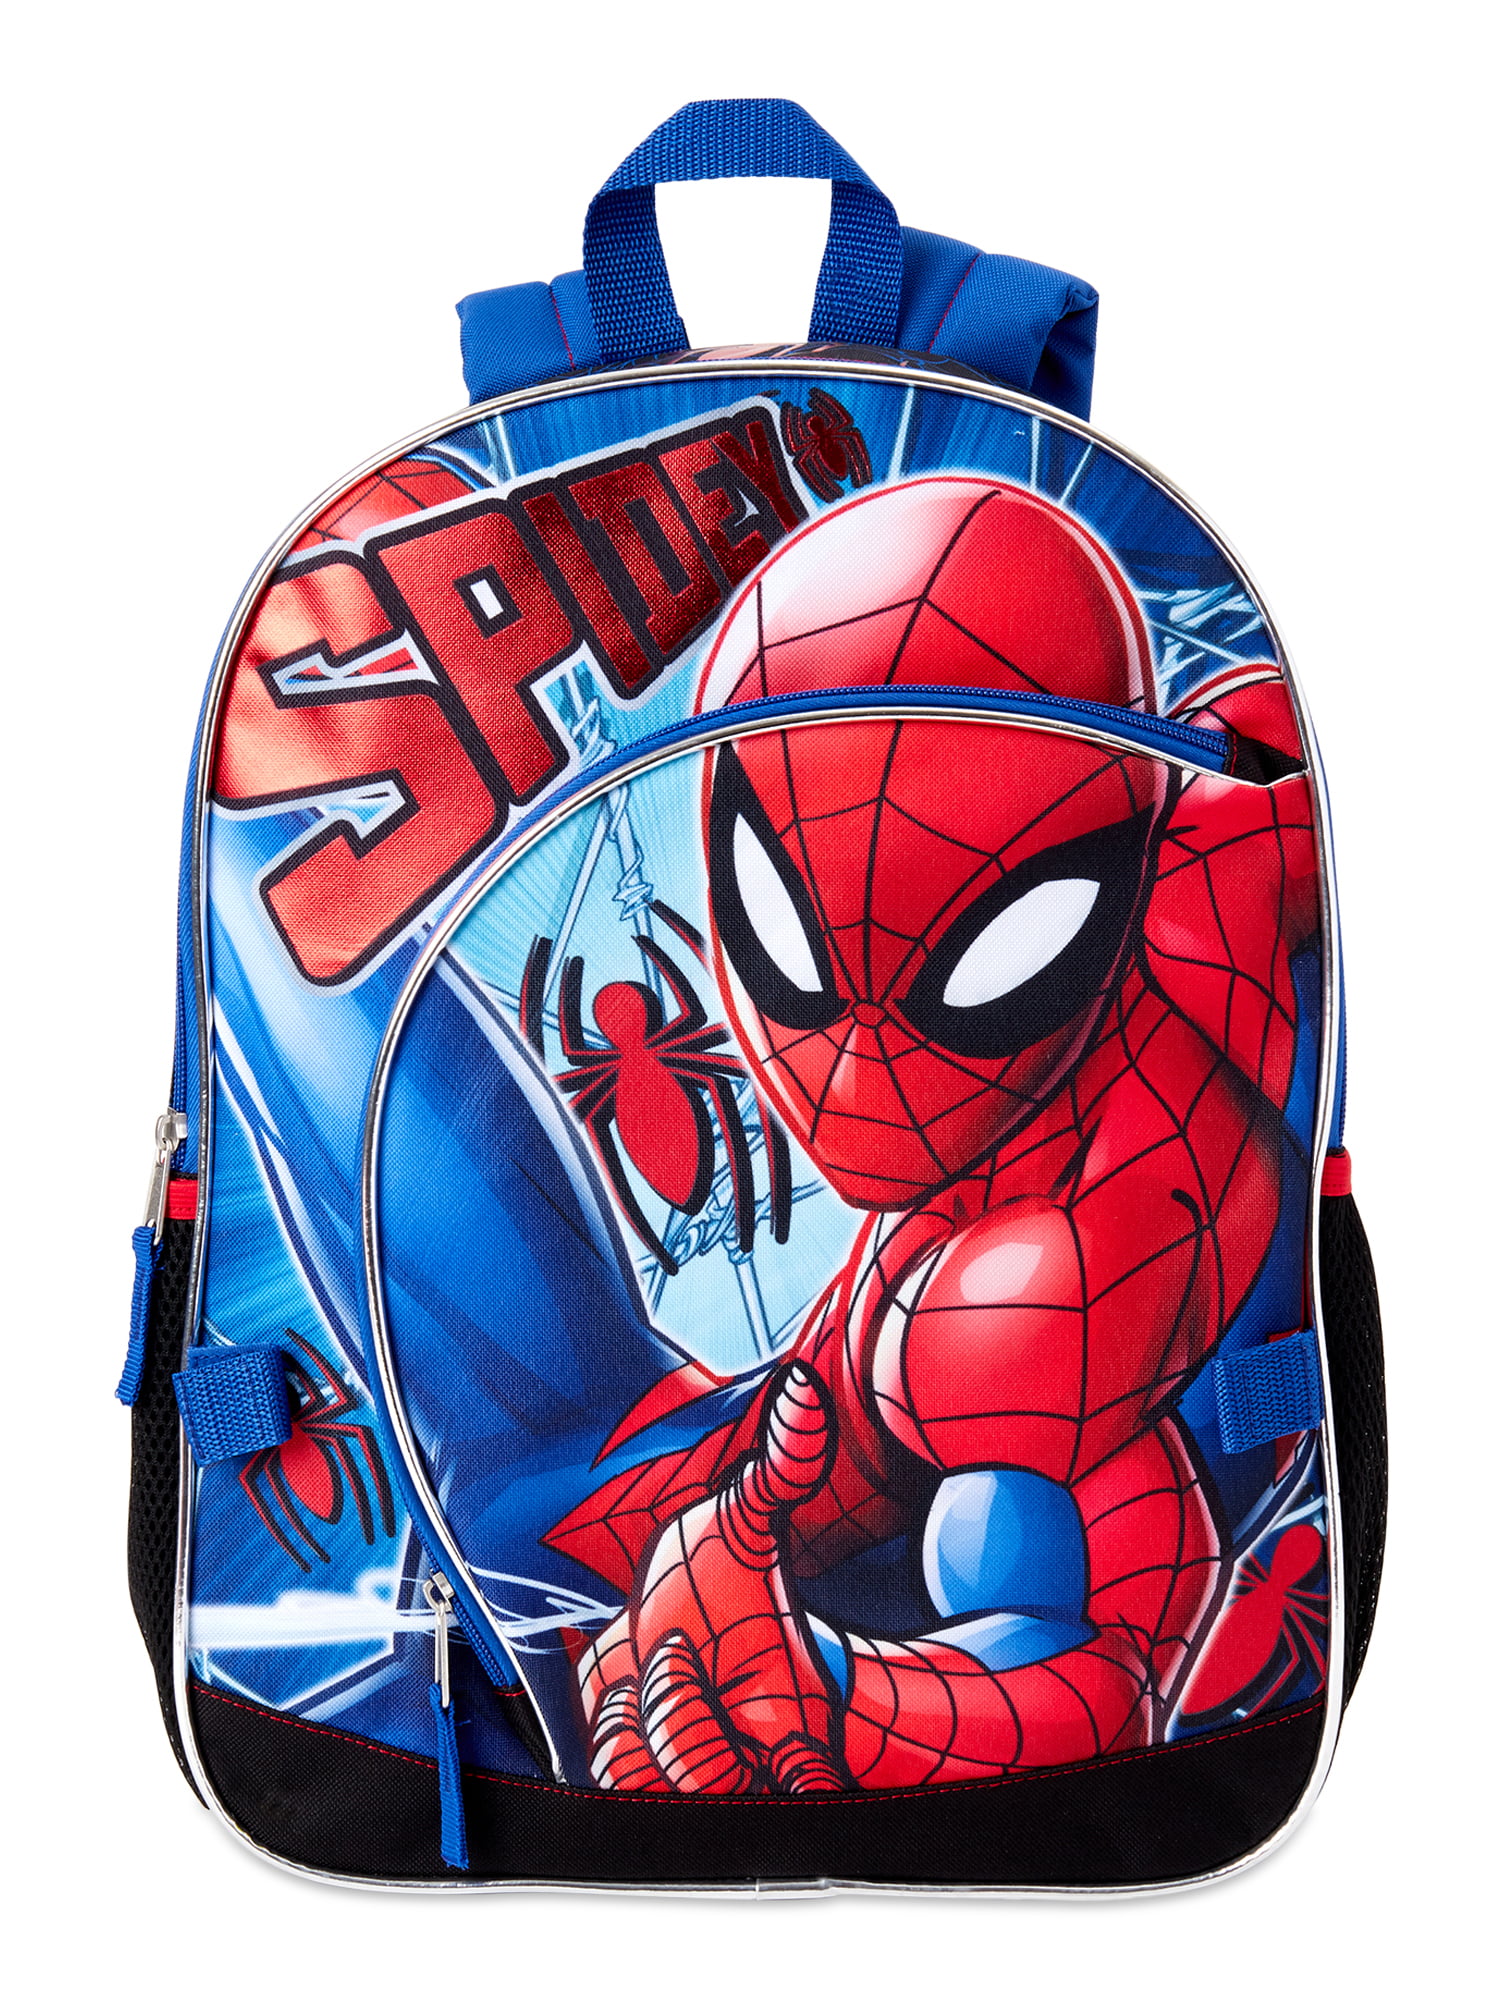 Spider Man Backpack Spots - spidermanjulll